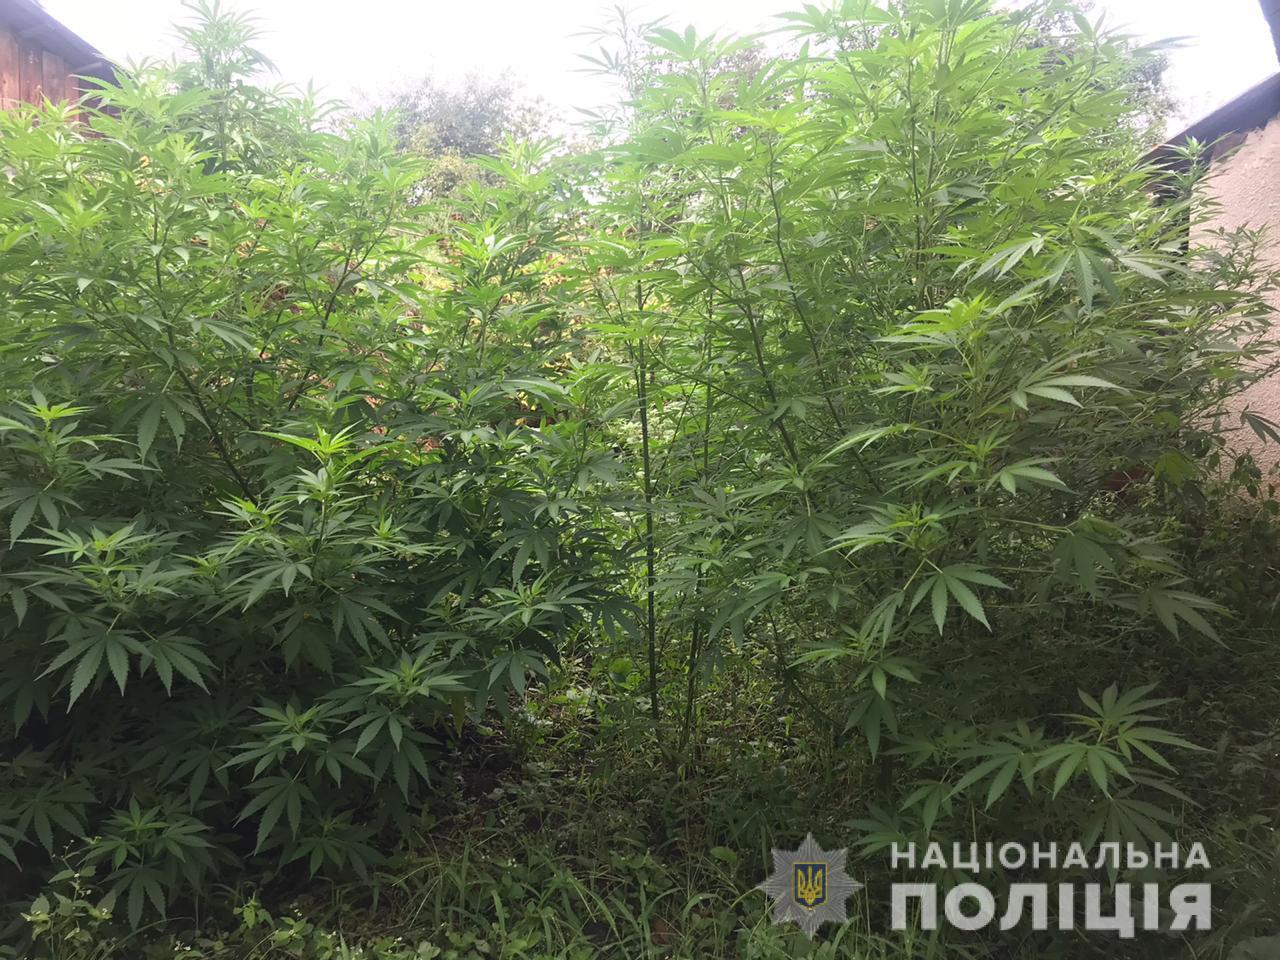 У мешканця Кальника на Мукачівщині виявили 2-метрові коноплі, насіння та готову до вживання марихуану (ФОТО)